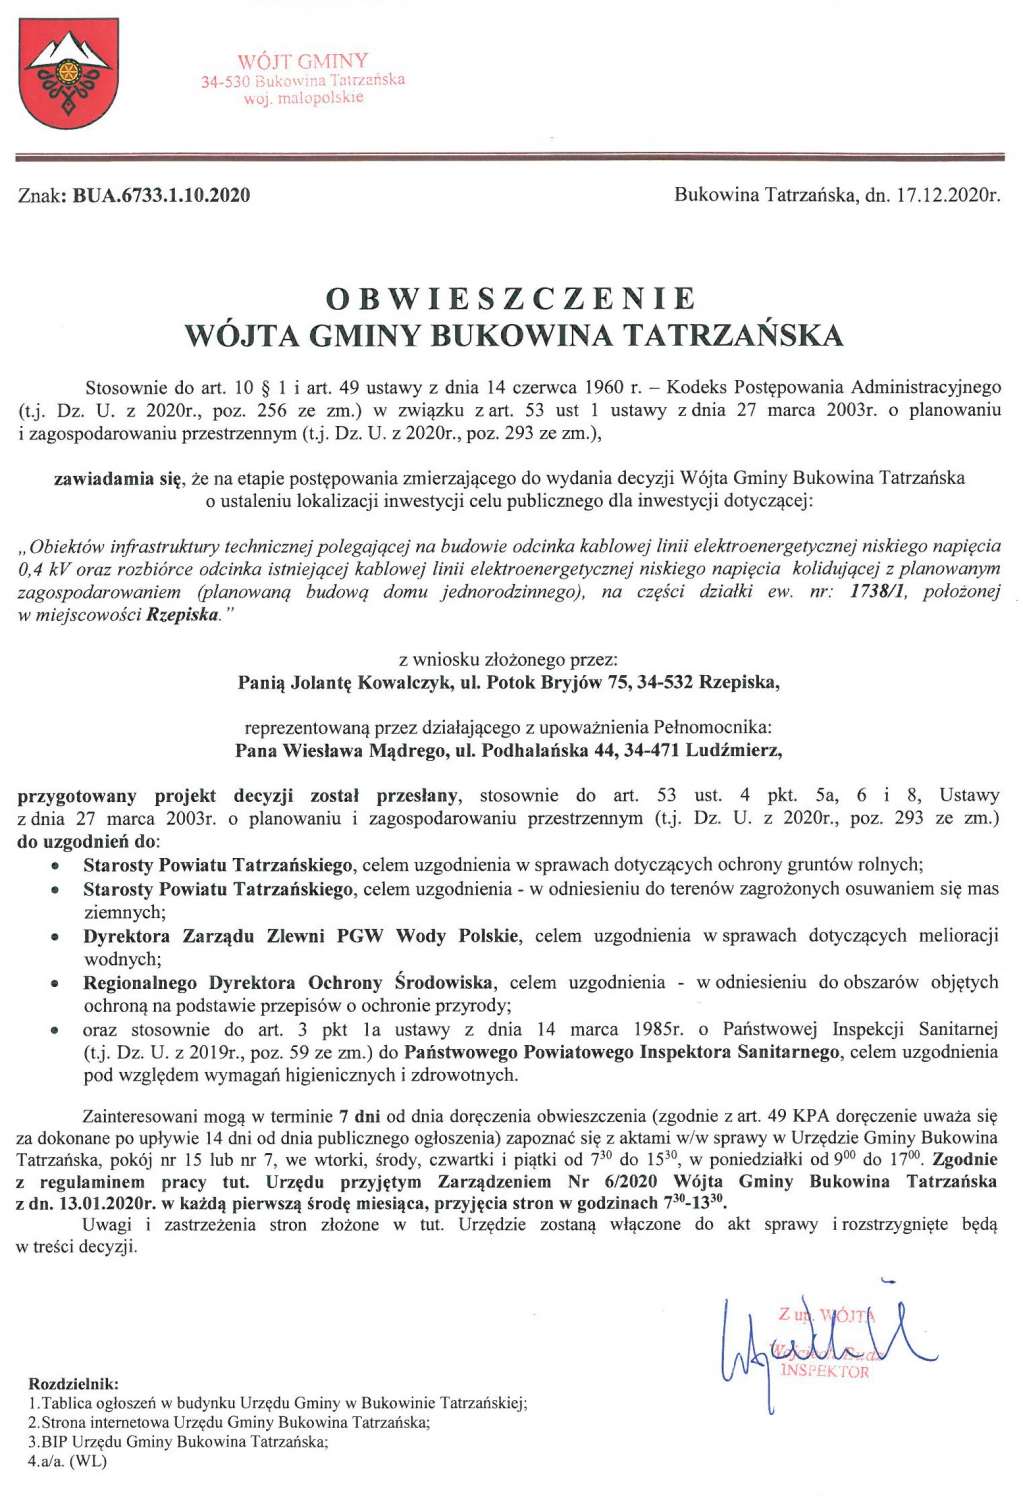 Obwieszczenie Wójta Gminy Bukowina Tatrzańska BUA 6733.1.10.2020